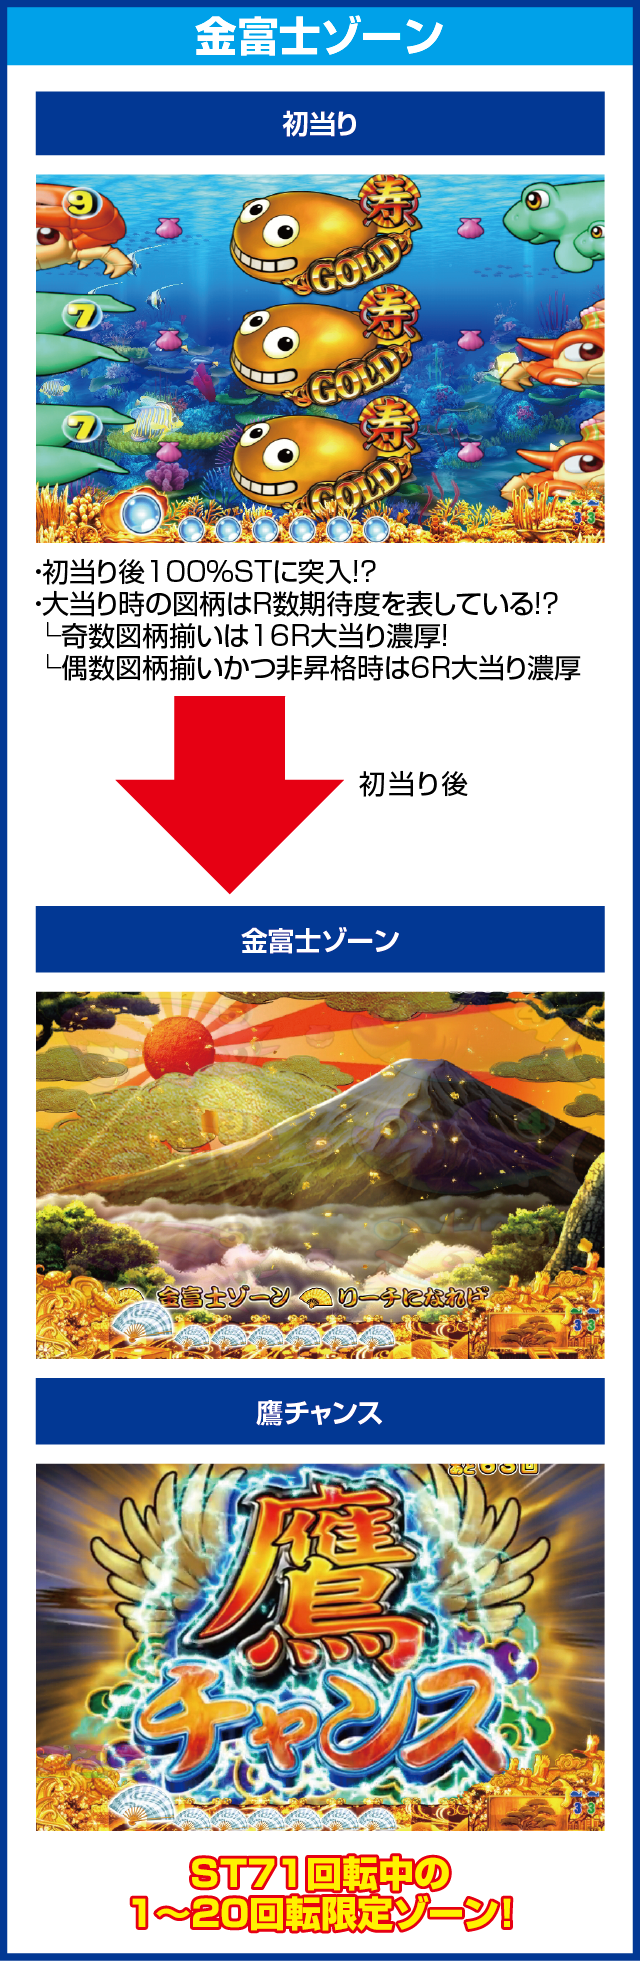 CRスーパー海物語IN JAPAN　金富士バージョン 319ver.のピックアップポイント